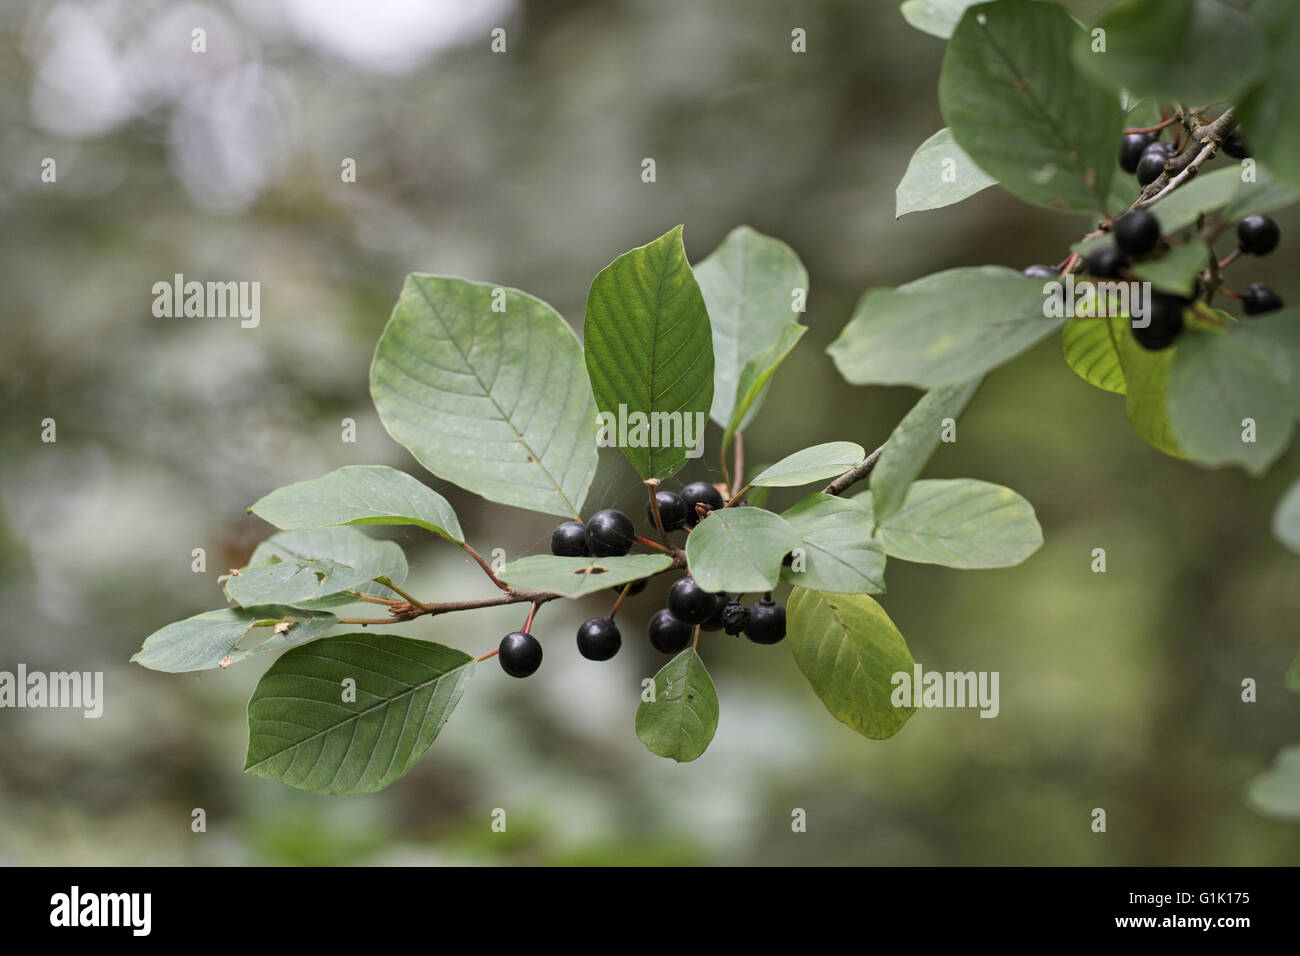 Alder buckthorn Frangula alnus berries Stock Photo